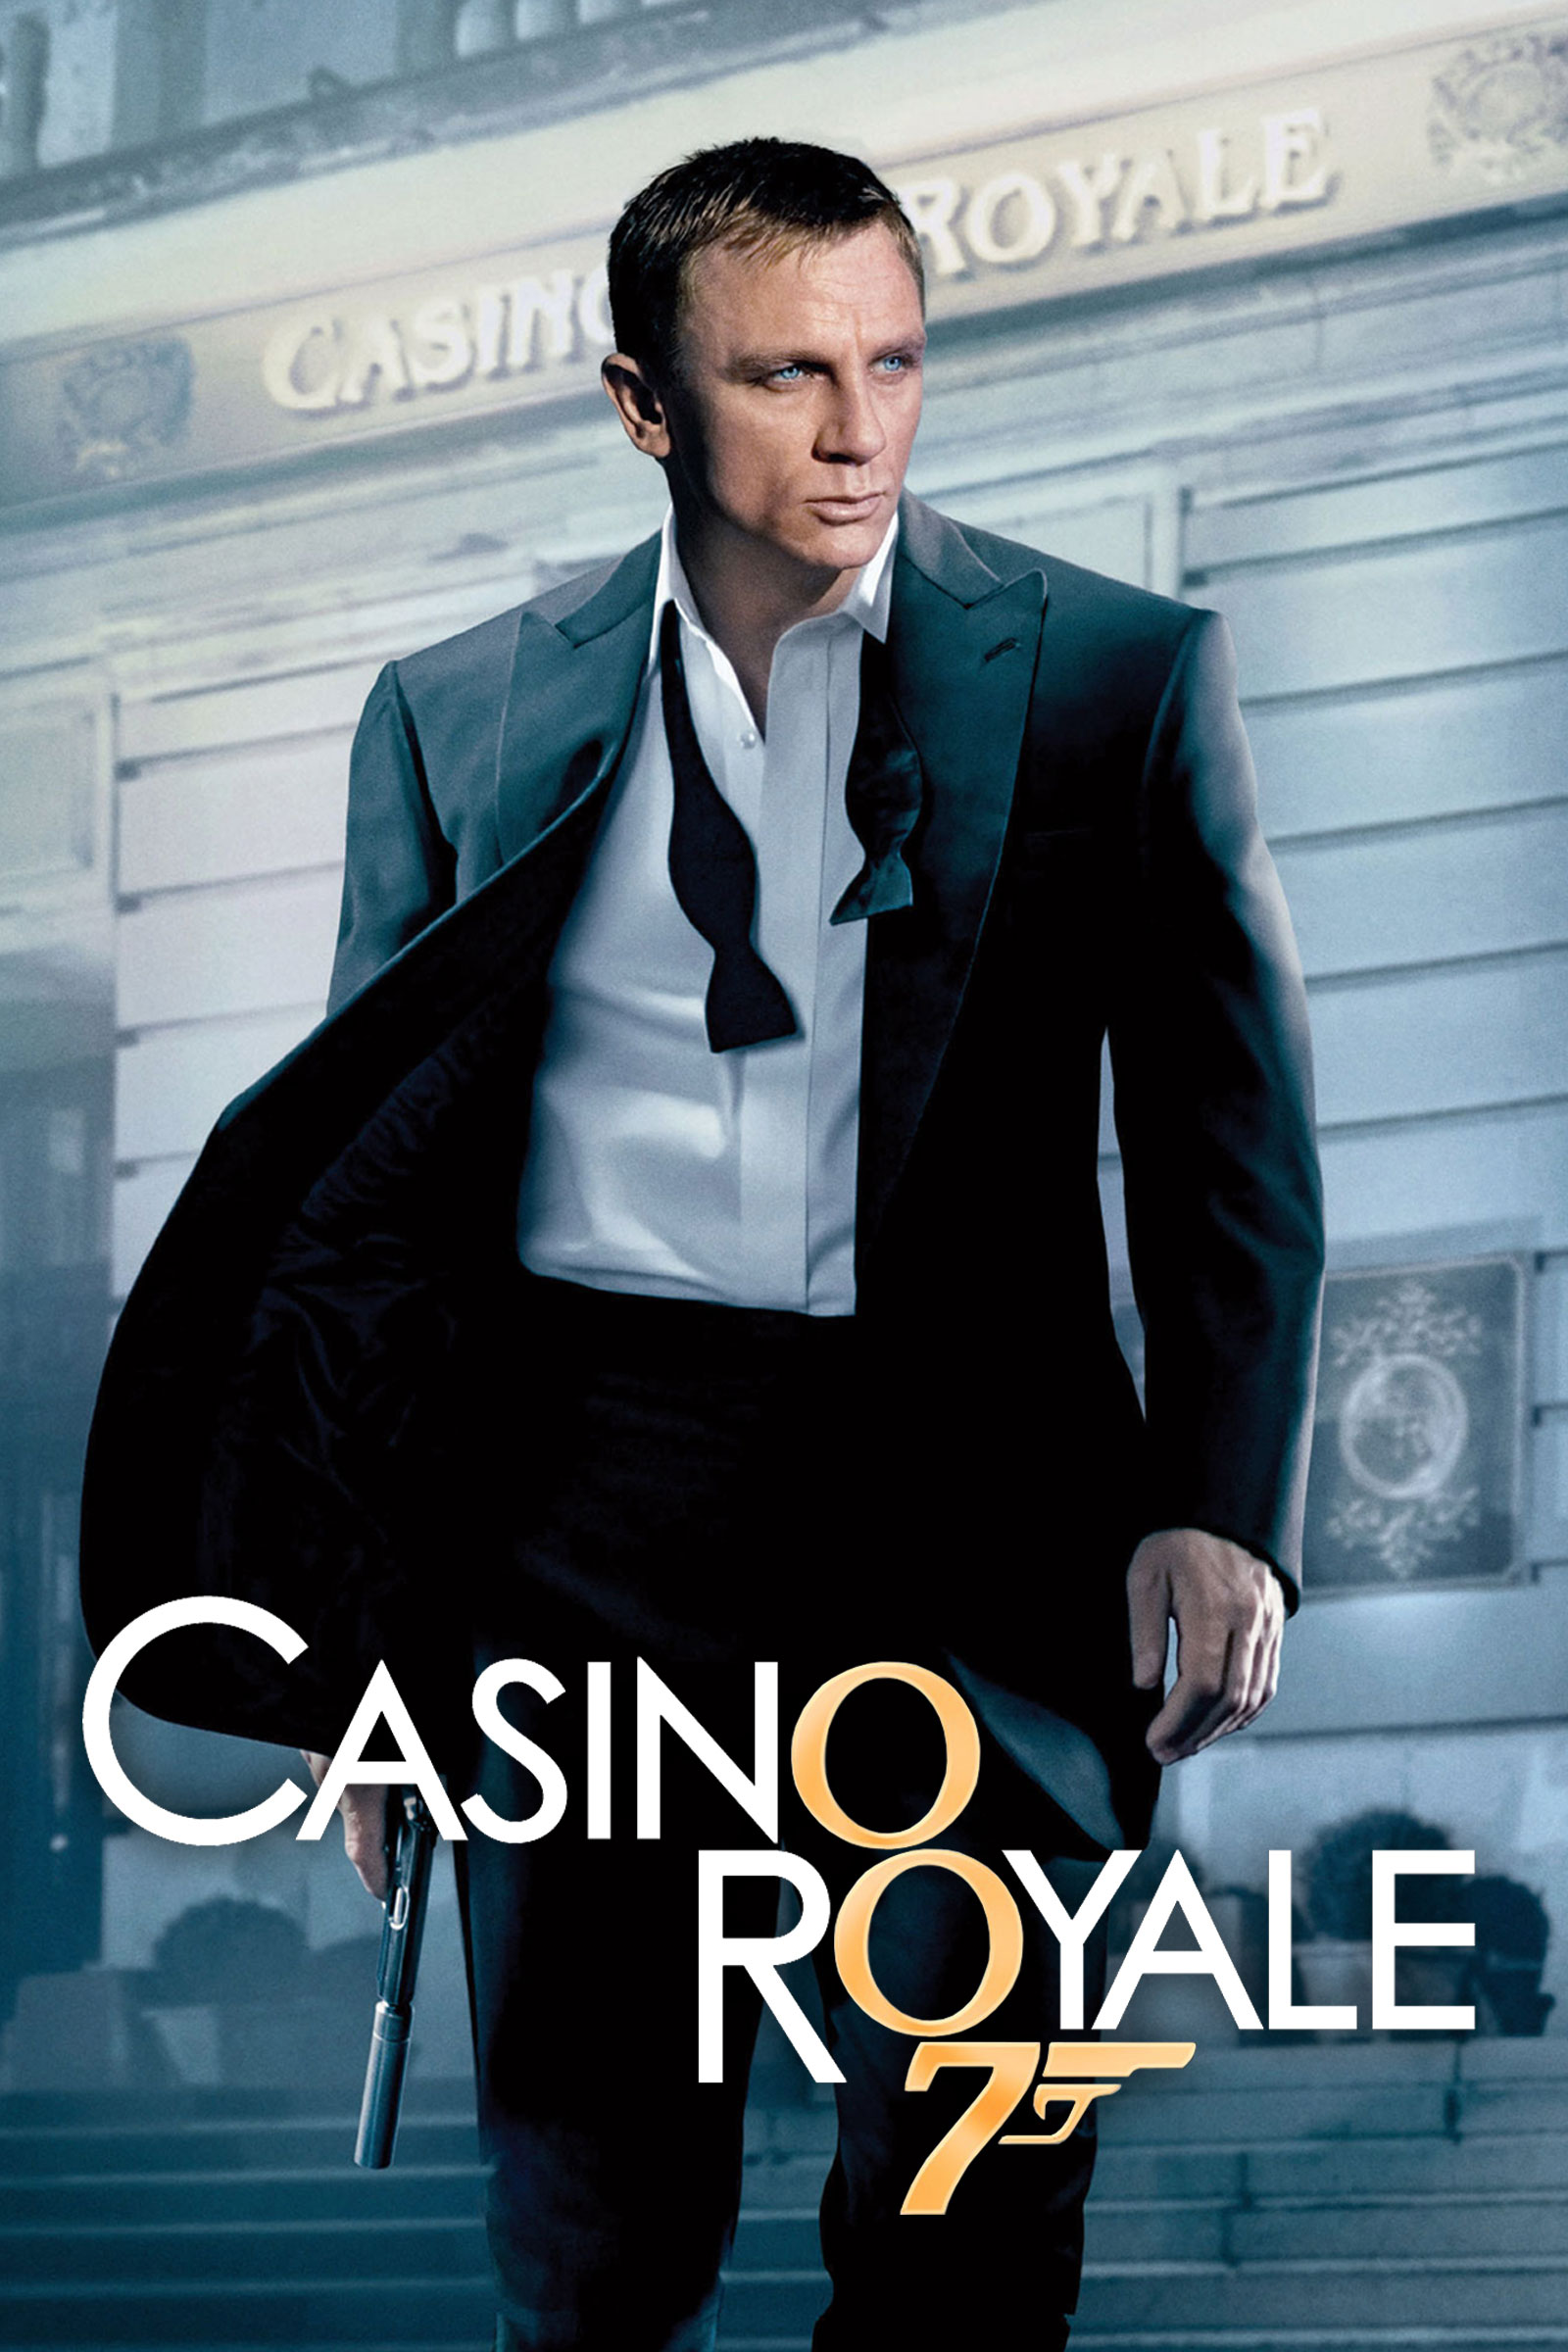 1954 casino royale movie